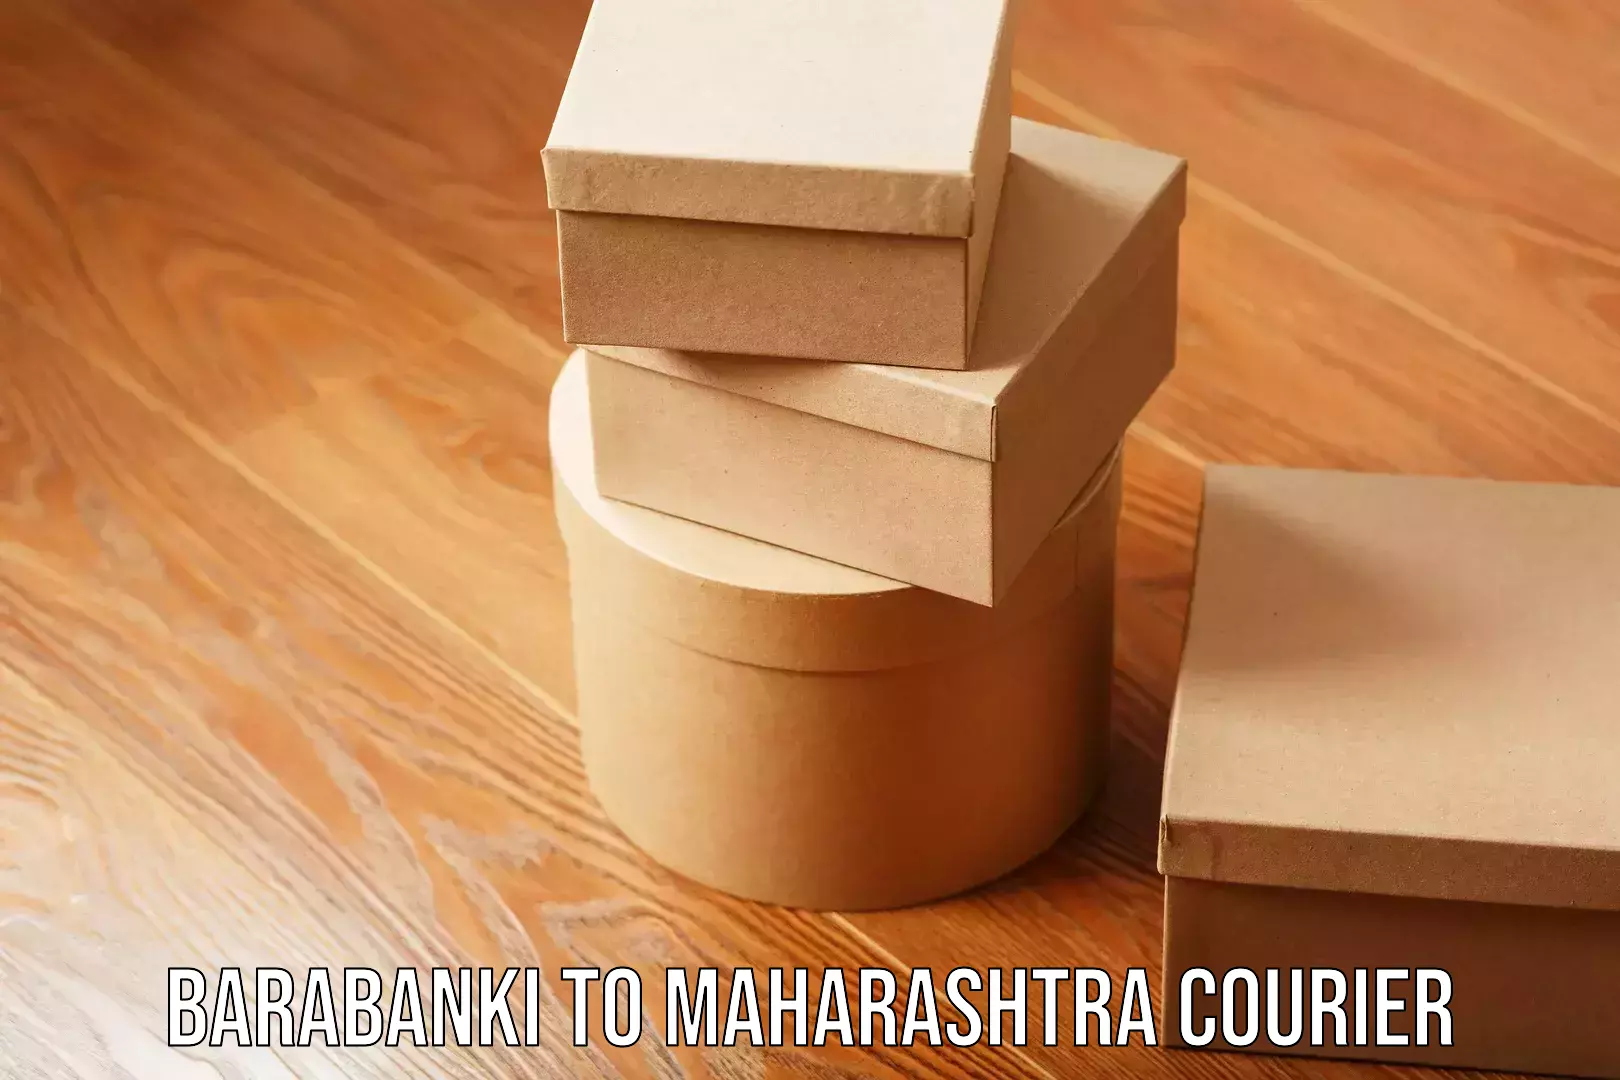 Innovative courier solutions Barabanki to Maharashtra